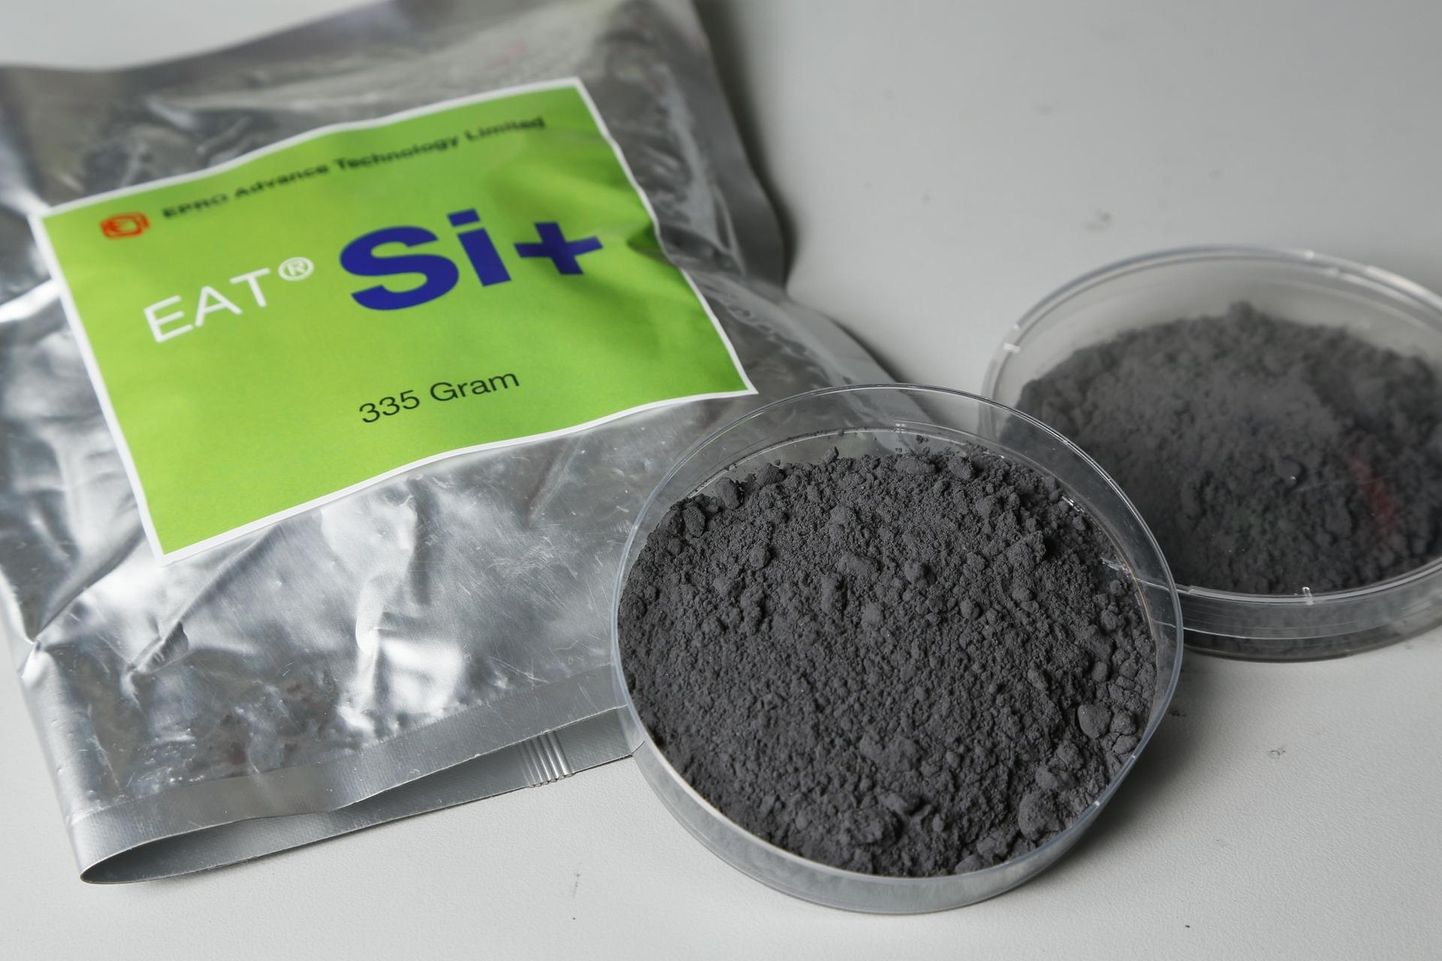 Hongkongis loodud Si+ nanopoorne materjal vesiniku salvestamiseks. 335-grammises pakendis sisalduvast vesinikust piisab, et sülearvutit paar-kolm tundi töös hoida.